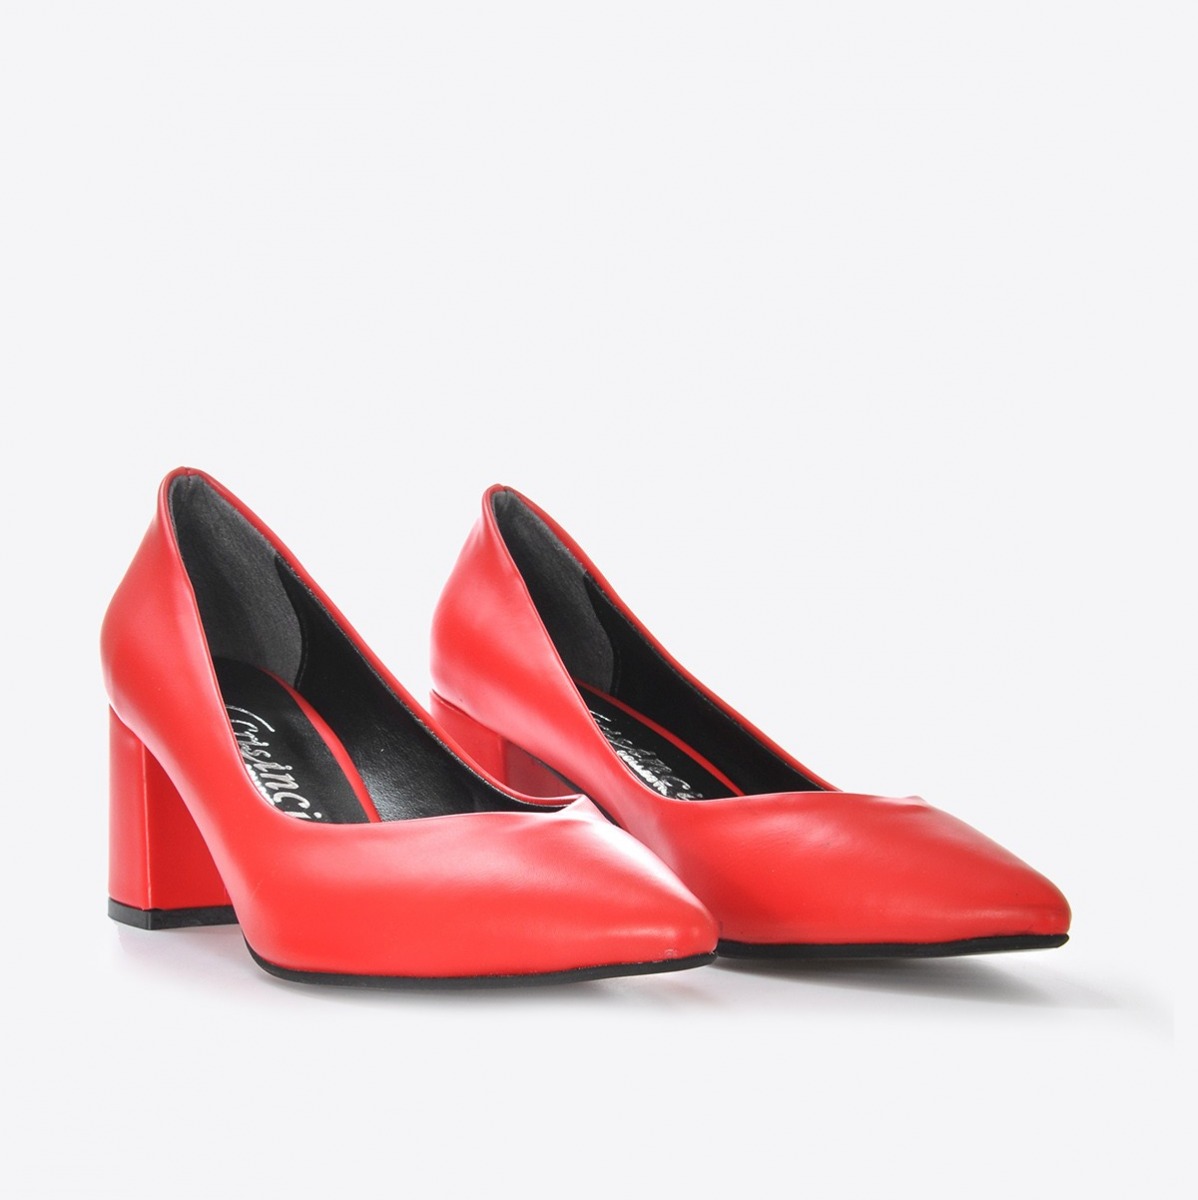 Flo Kadın Kırmızı Klasik Topuklu Ayakkabı VZN21-002Y. 4